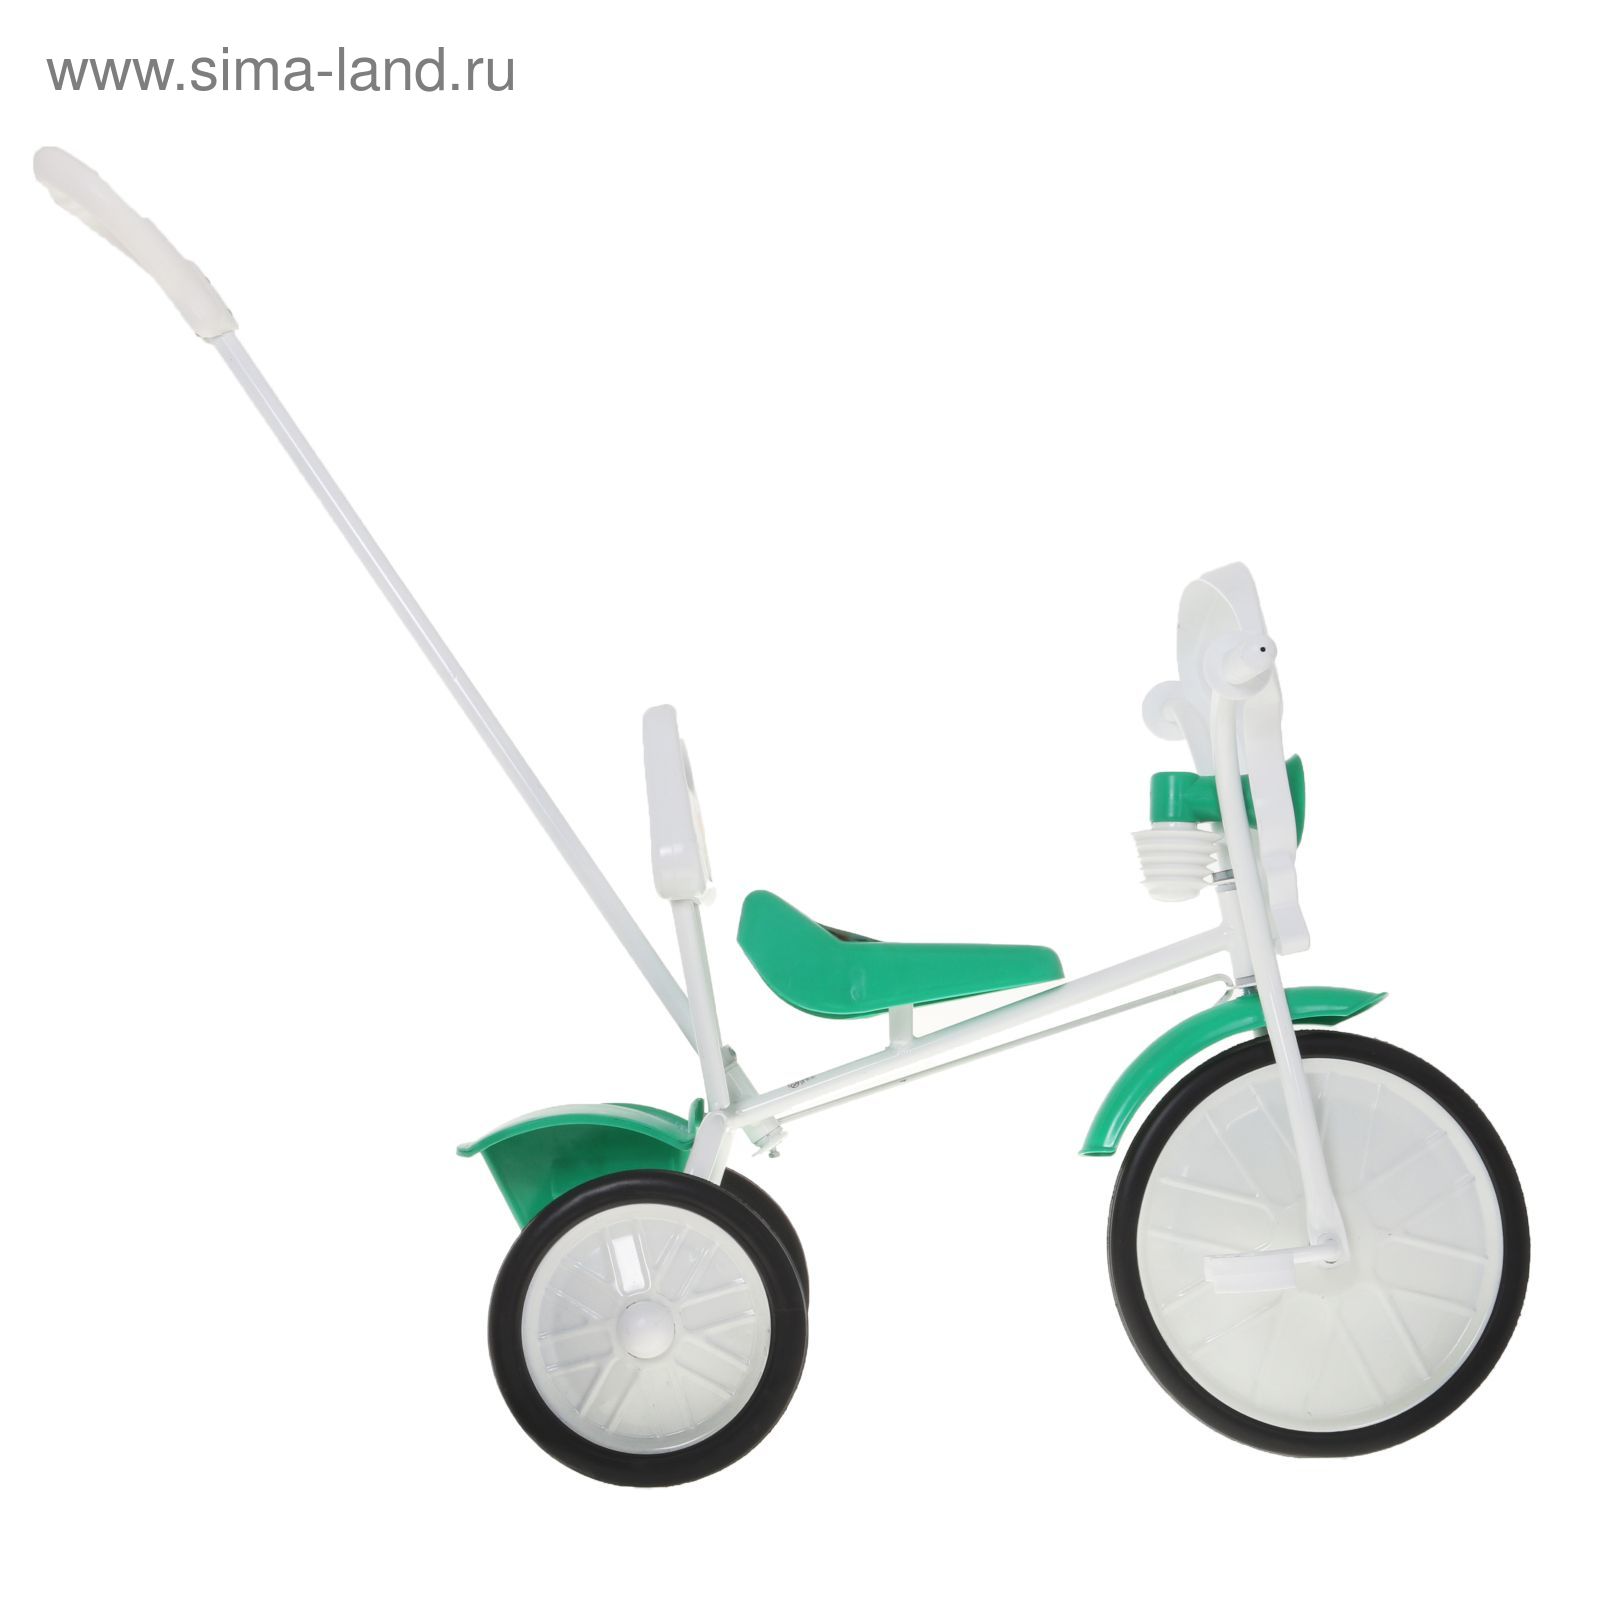 Велосипед трехколесный "Малыш" 09/3, цвет: зеленый, фасовка: 2 шт.